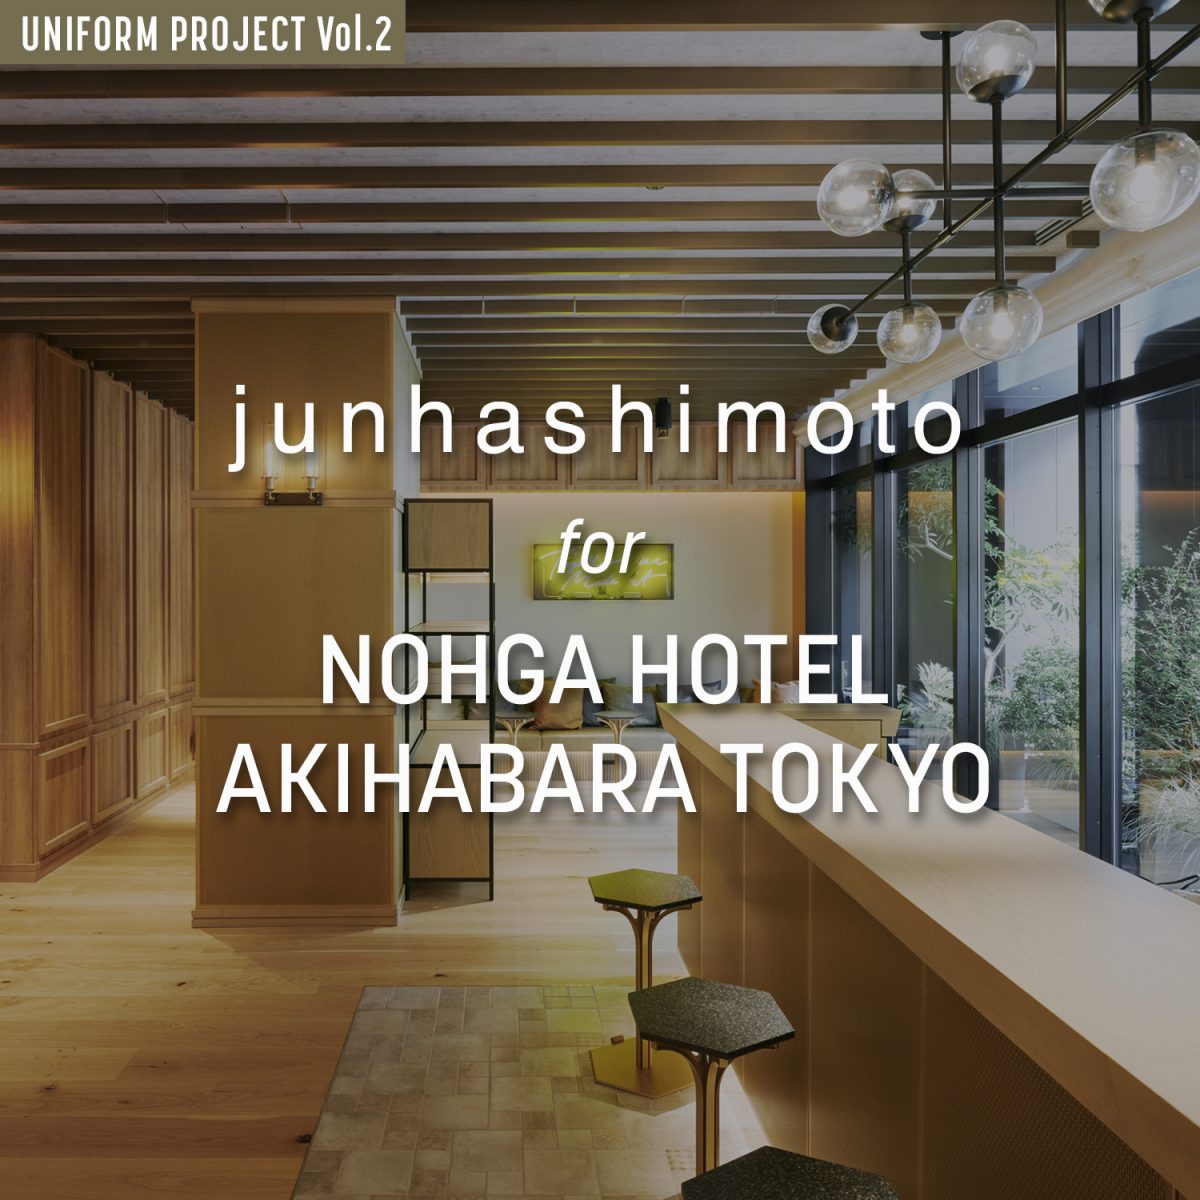 junhashimoto for NOHGA HOTEL AKIHABARA TOKYO